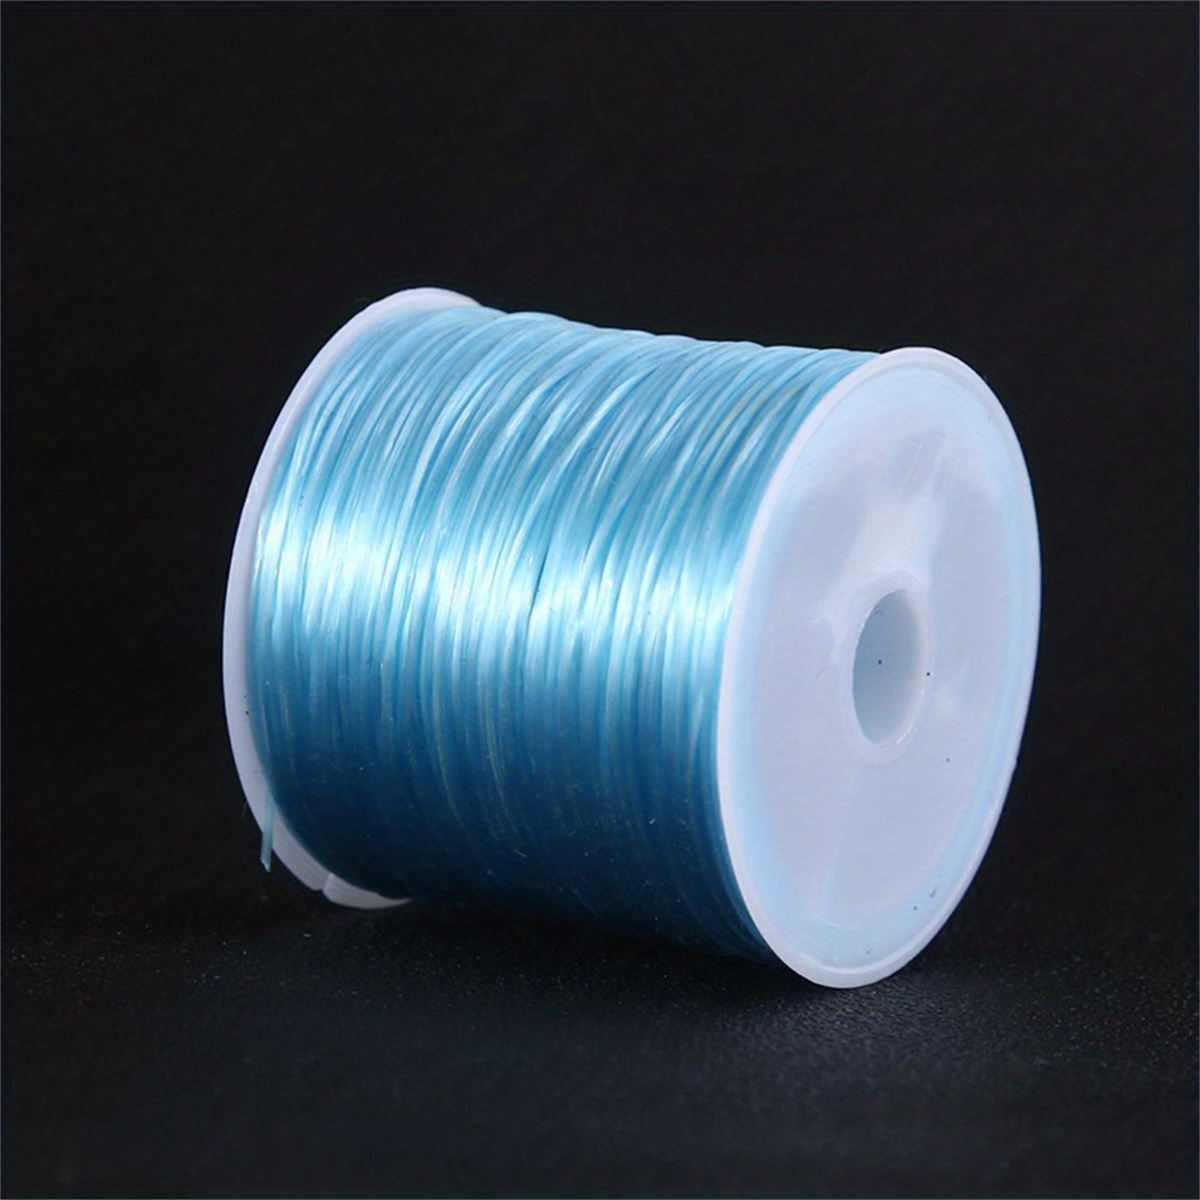 150m 0.35~ Fishing Thread Elastic Nylon Wire Beading Diy - Temu